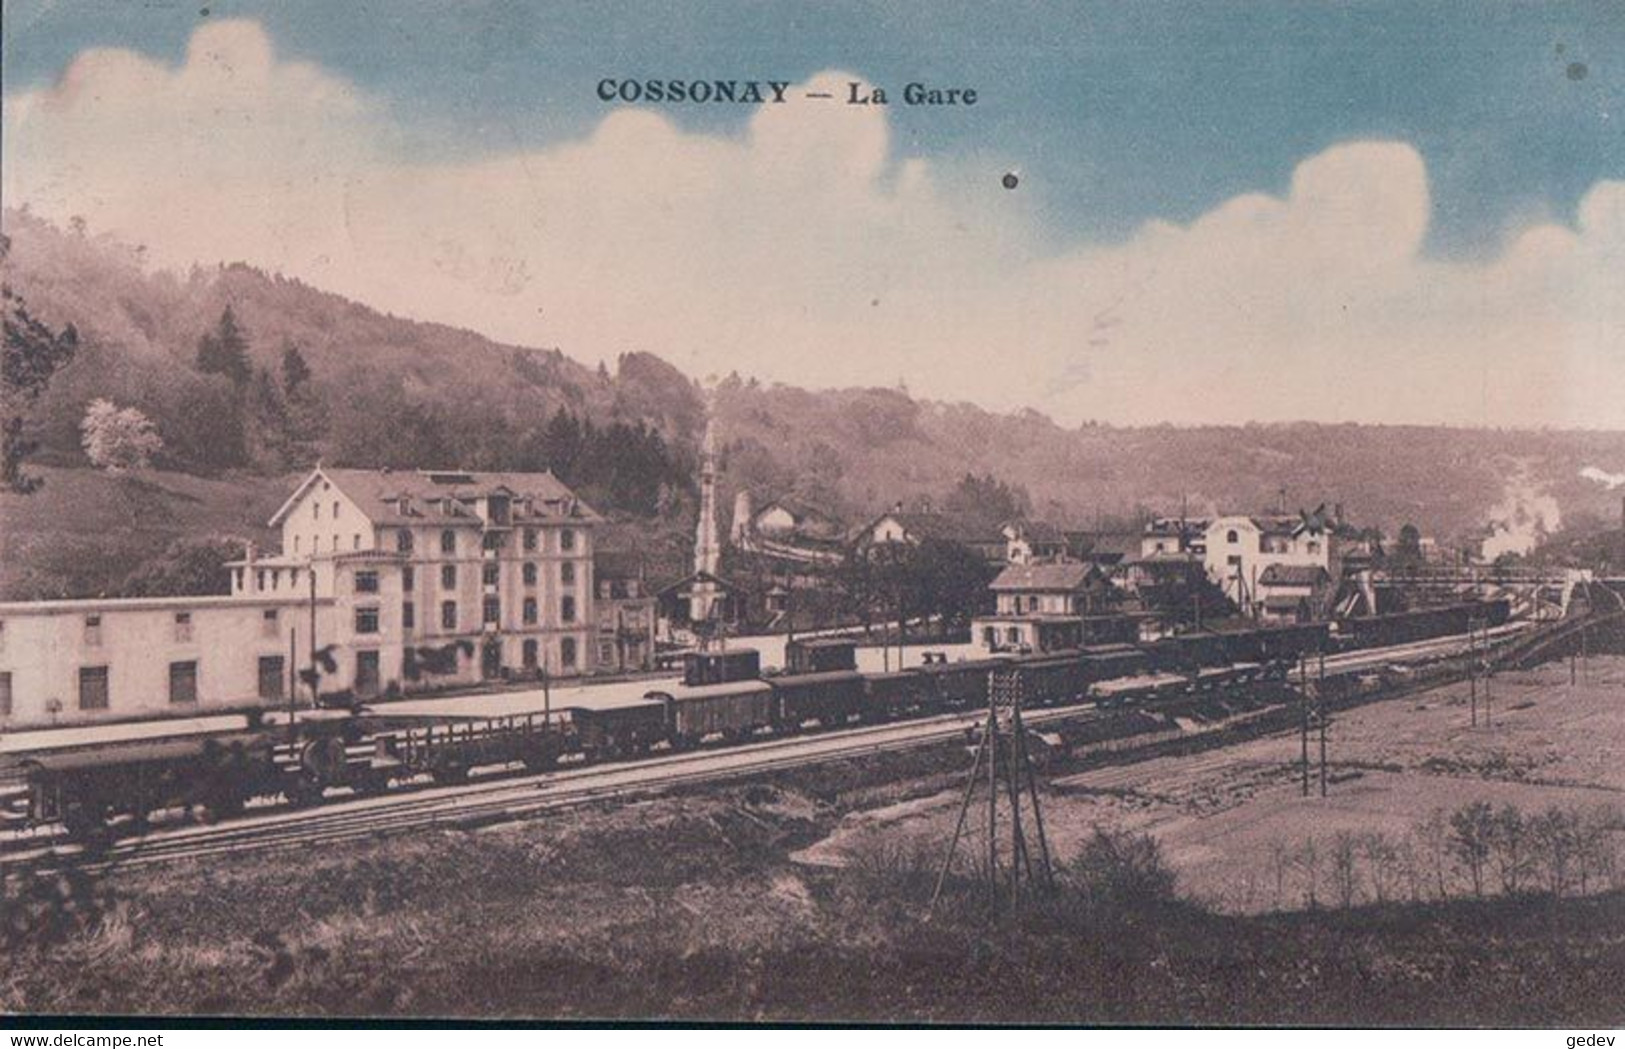 Cossonay Gare VD, Chemin De Fer Et Trains à Vapeur (489 B) - Cossonay